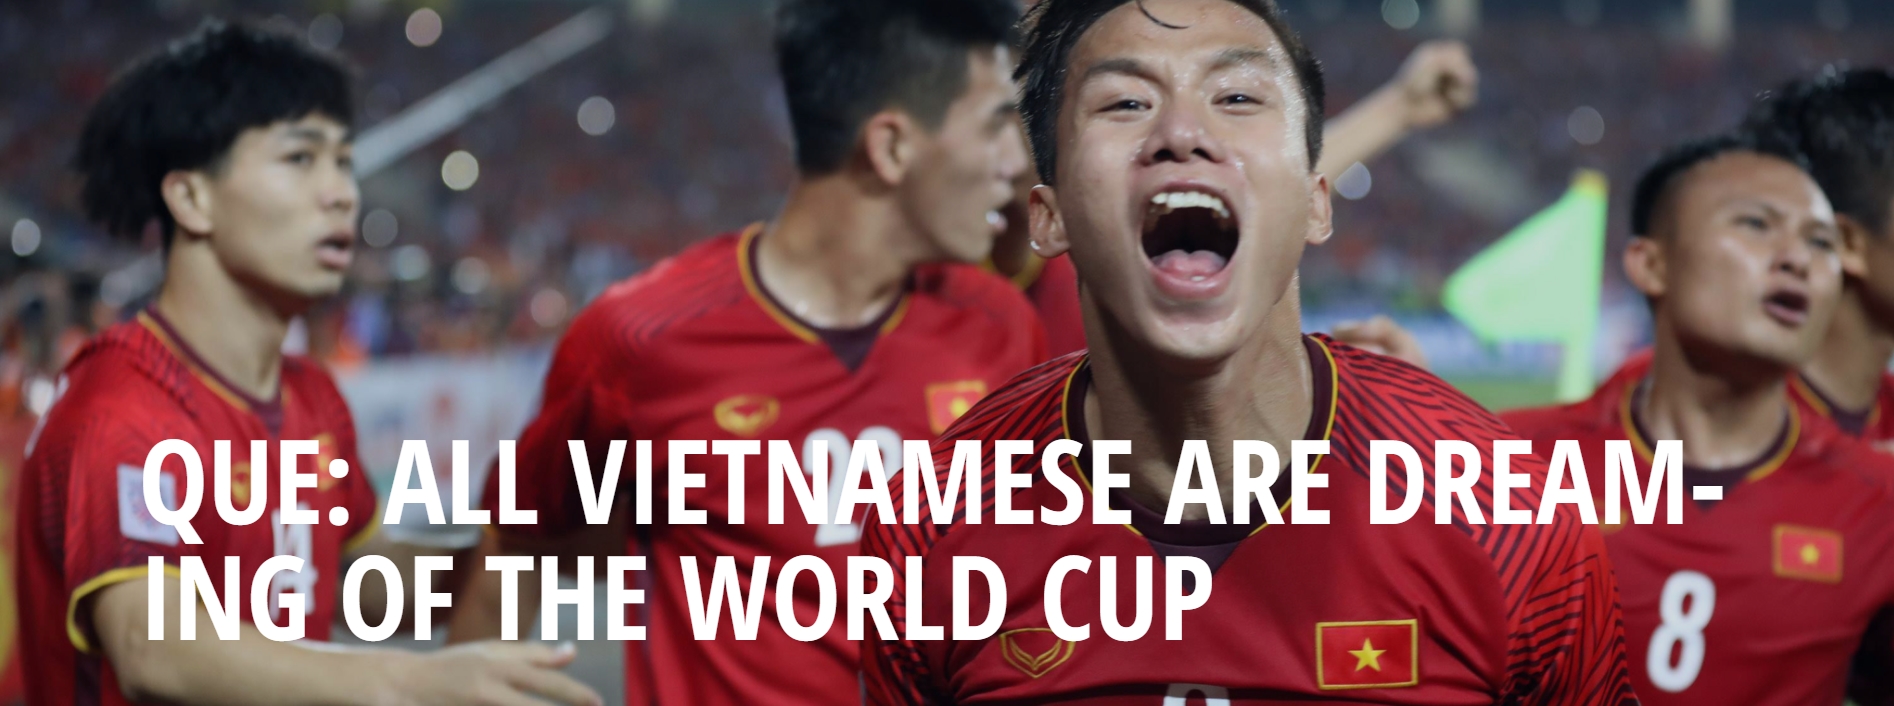 Quế Ngọc Hải: 'Tất cả CĐV và cầu thủ đều mong một ngày ĐT Việt Nam được dự World Cup' 1